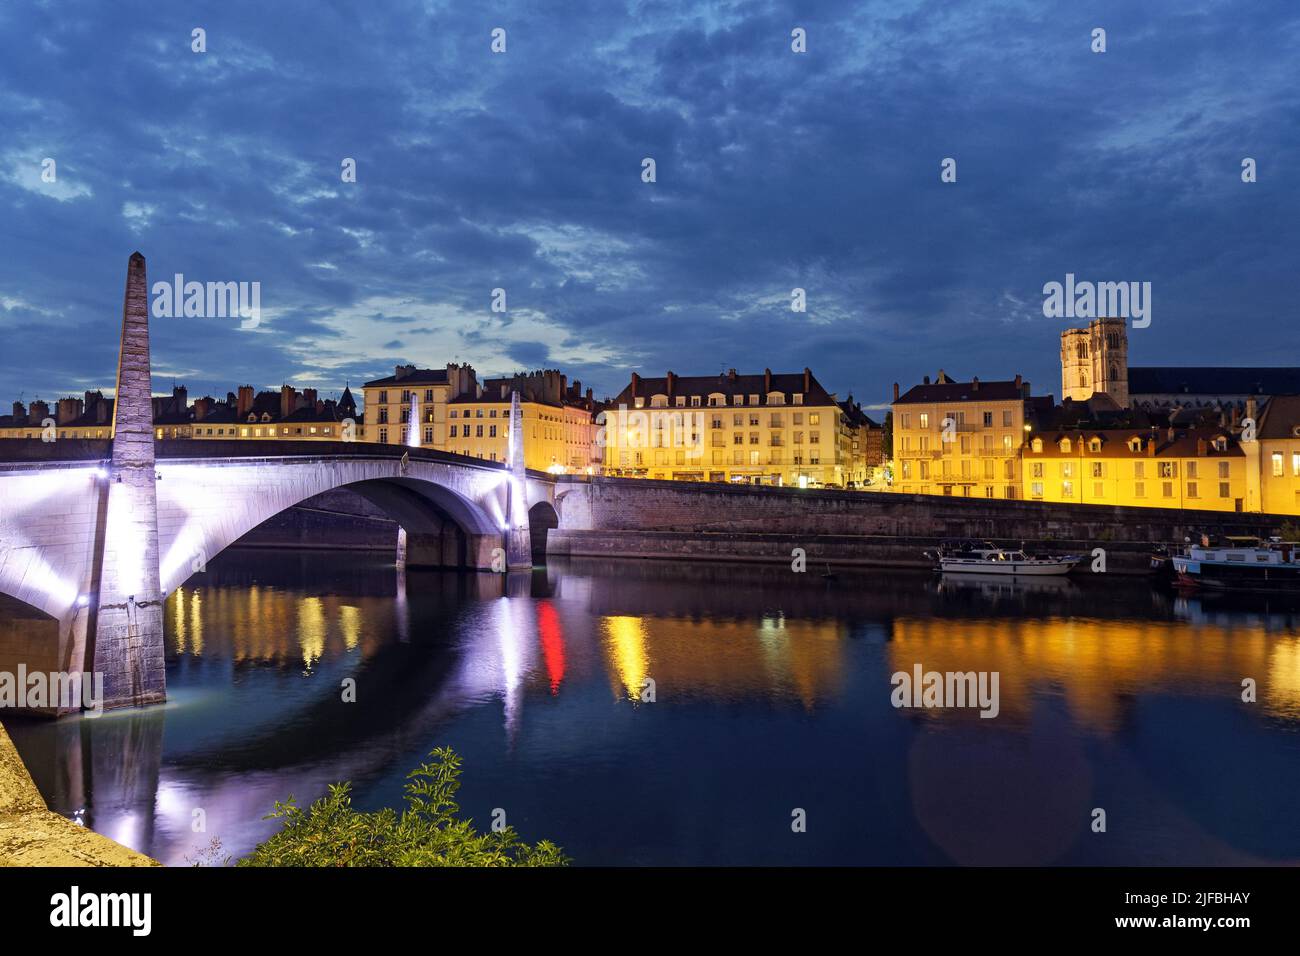 France, Saône et Loire, Chalon sur Saône, les rives de la Saône, quai Gambetta, le pont Saint Laurent et la cathédrale Saint Vincent Banque D'Images